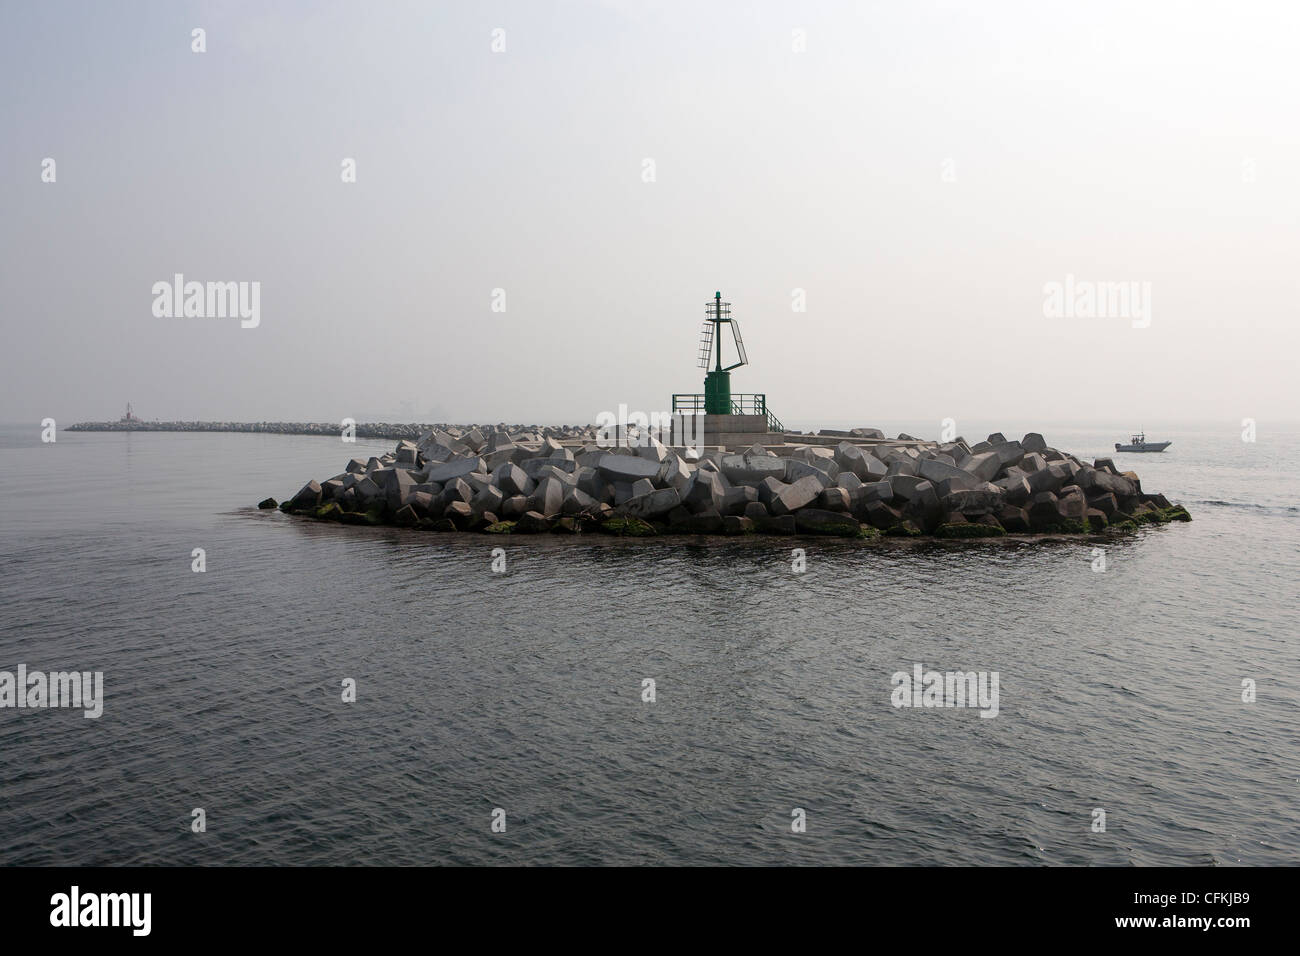 Accropodes per la protezione del litorale di Chioggia , Venezia, sul lato destro della baia di imbocco come mostrato dalla torre verde. Foto Stock